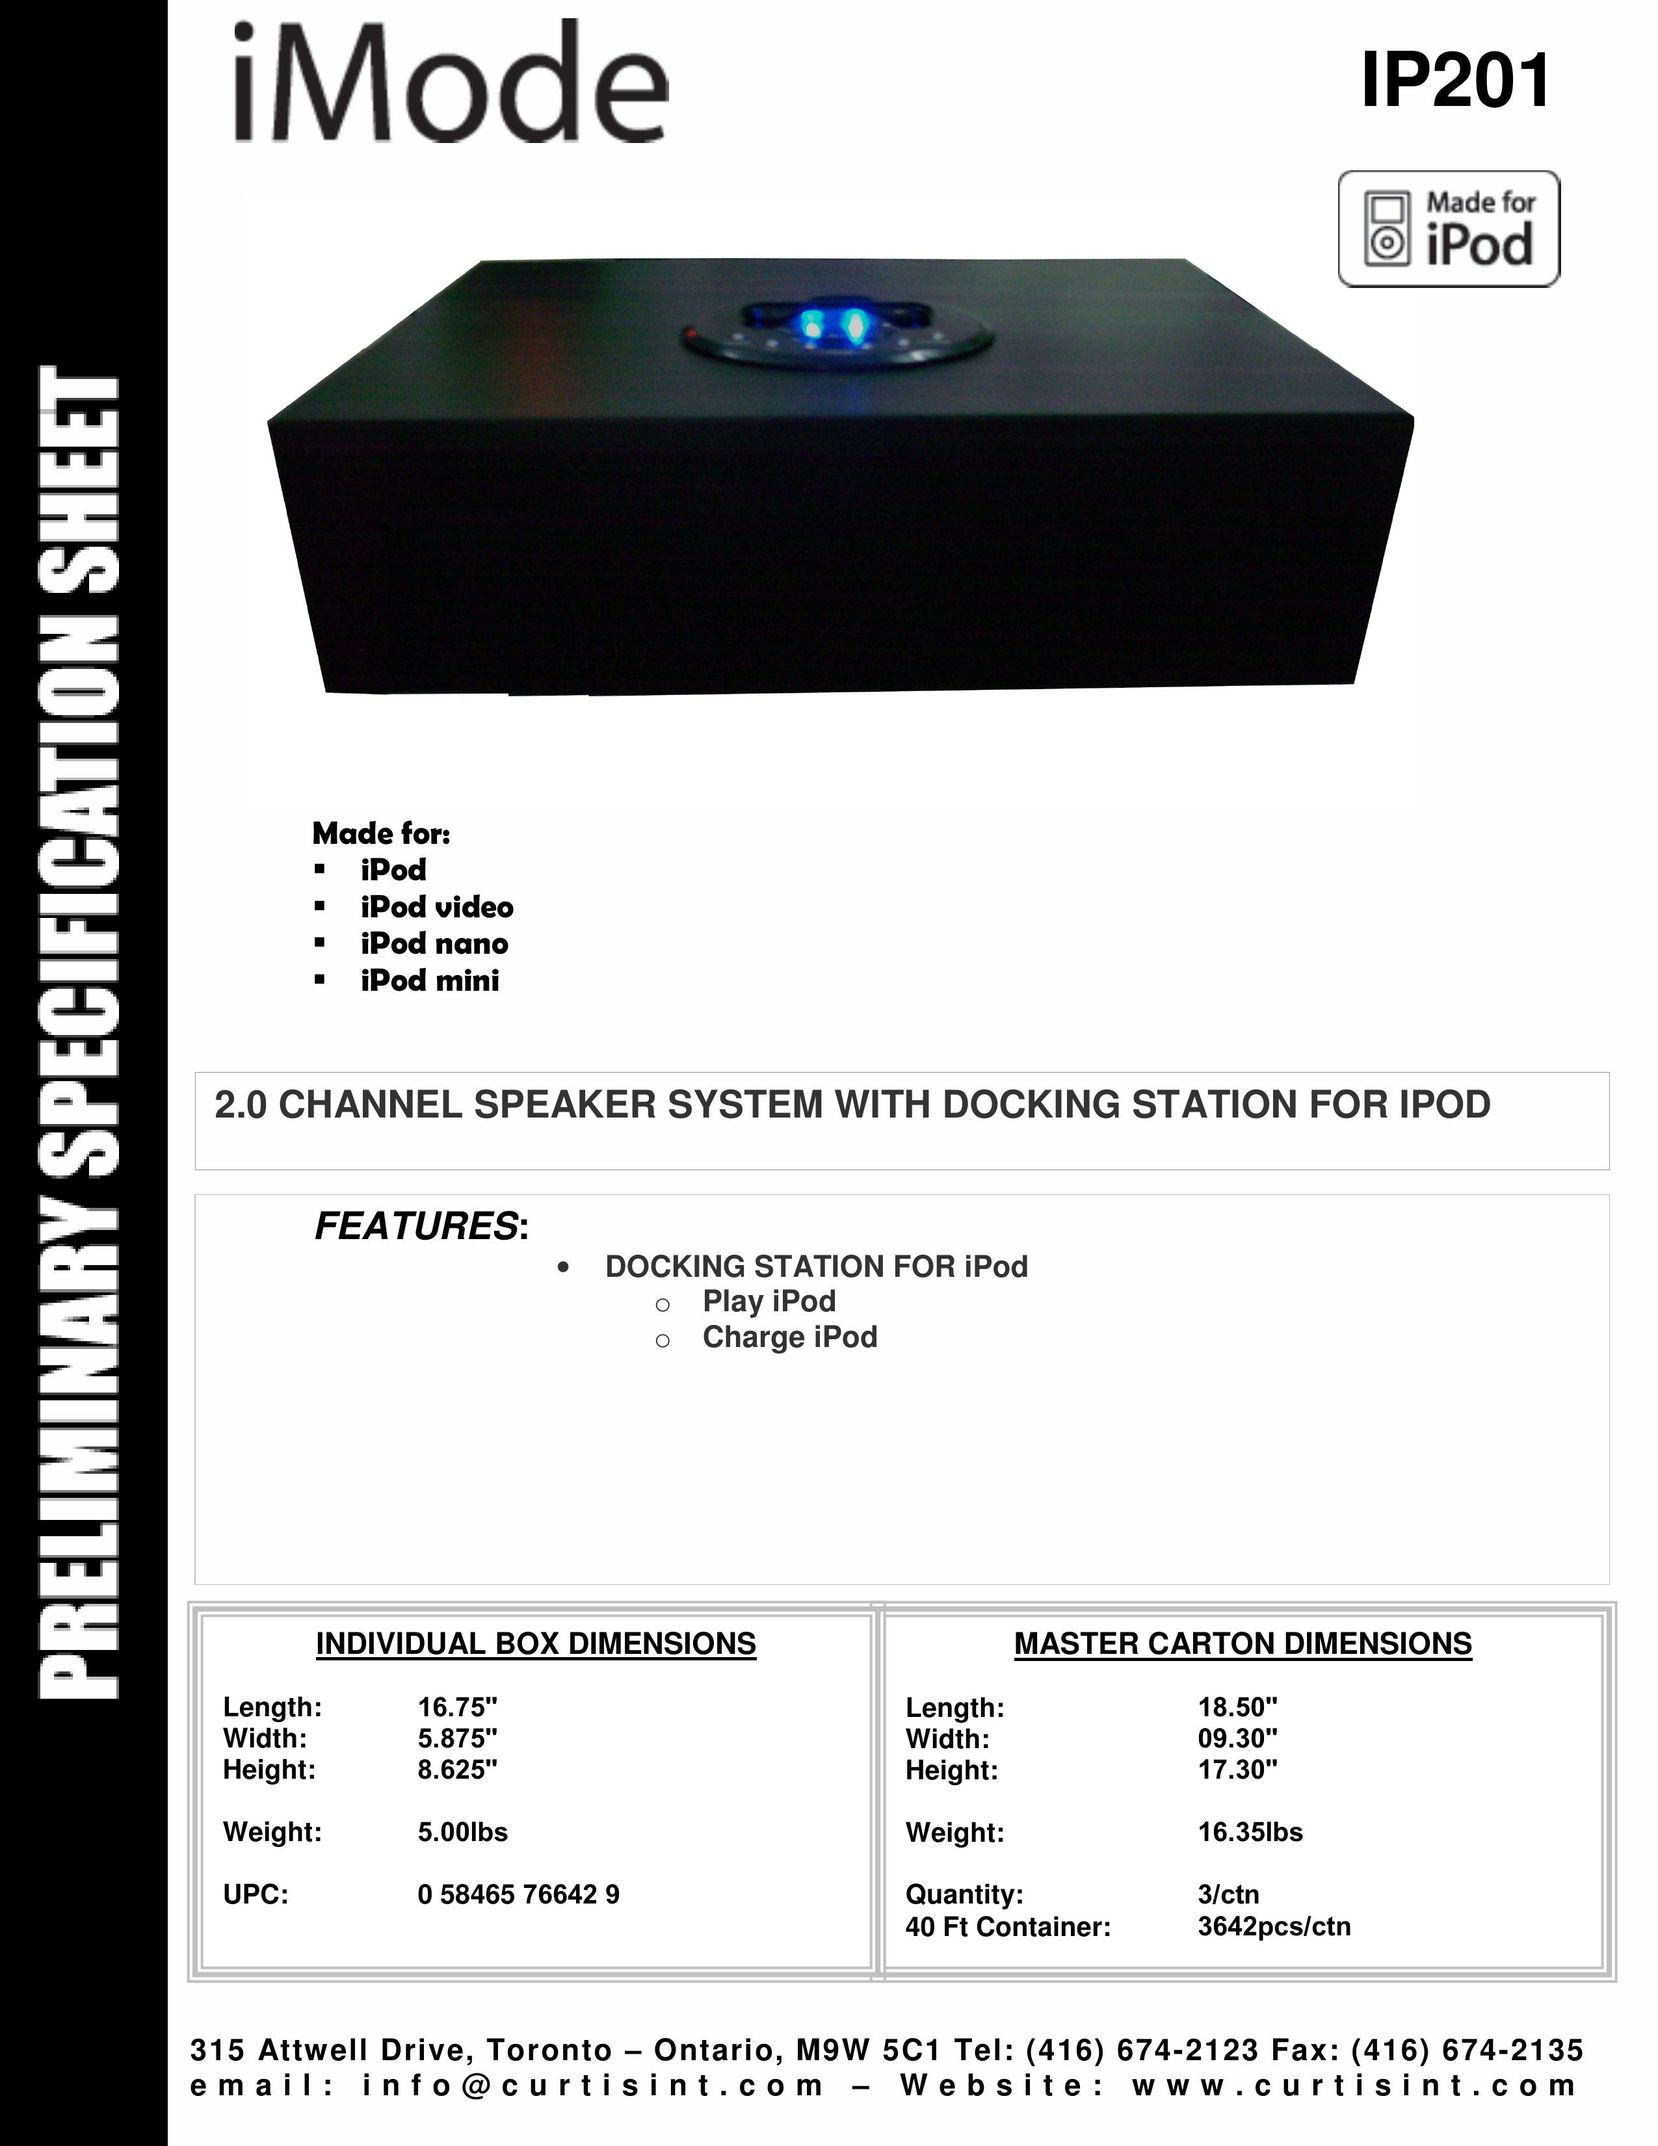 Curtis IP201 MP3 Docking Station User Manual